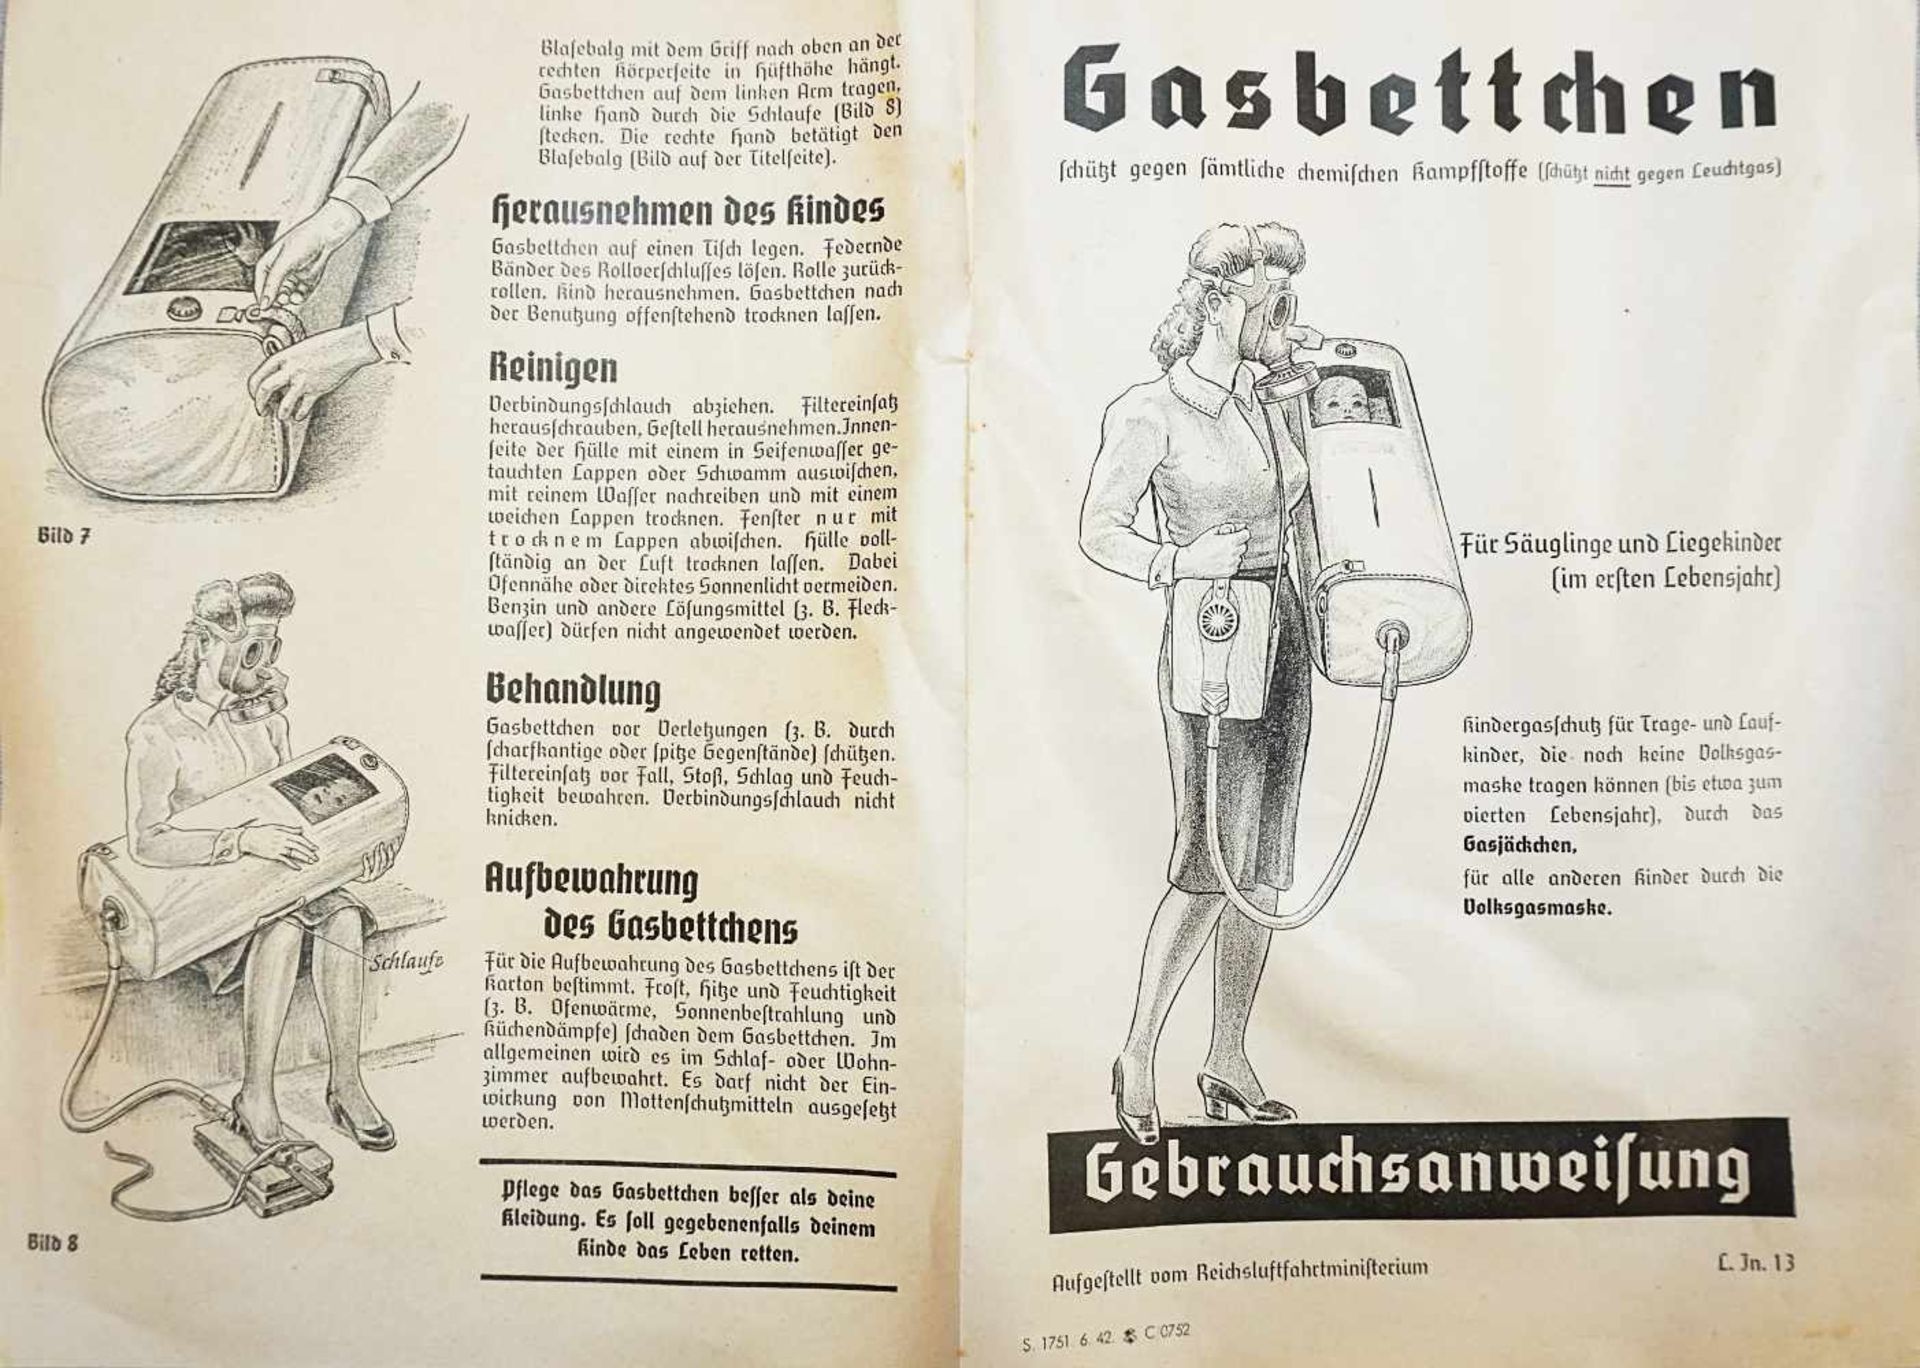 2 Objekte zum Kindergasschutz gegen sämtliche chemische Kampfstoffe 3. Reich:Gasbettchen für - Bild 3 aus 6